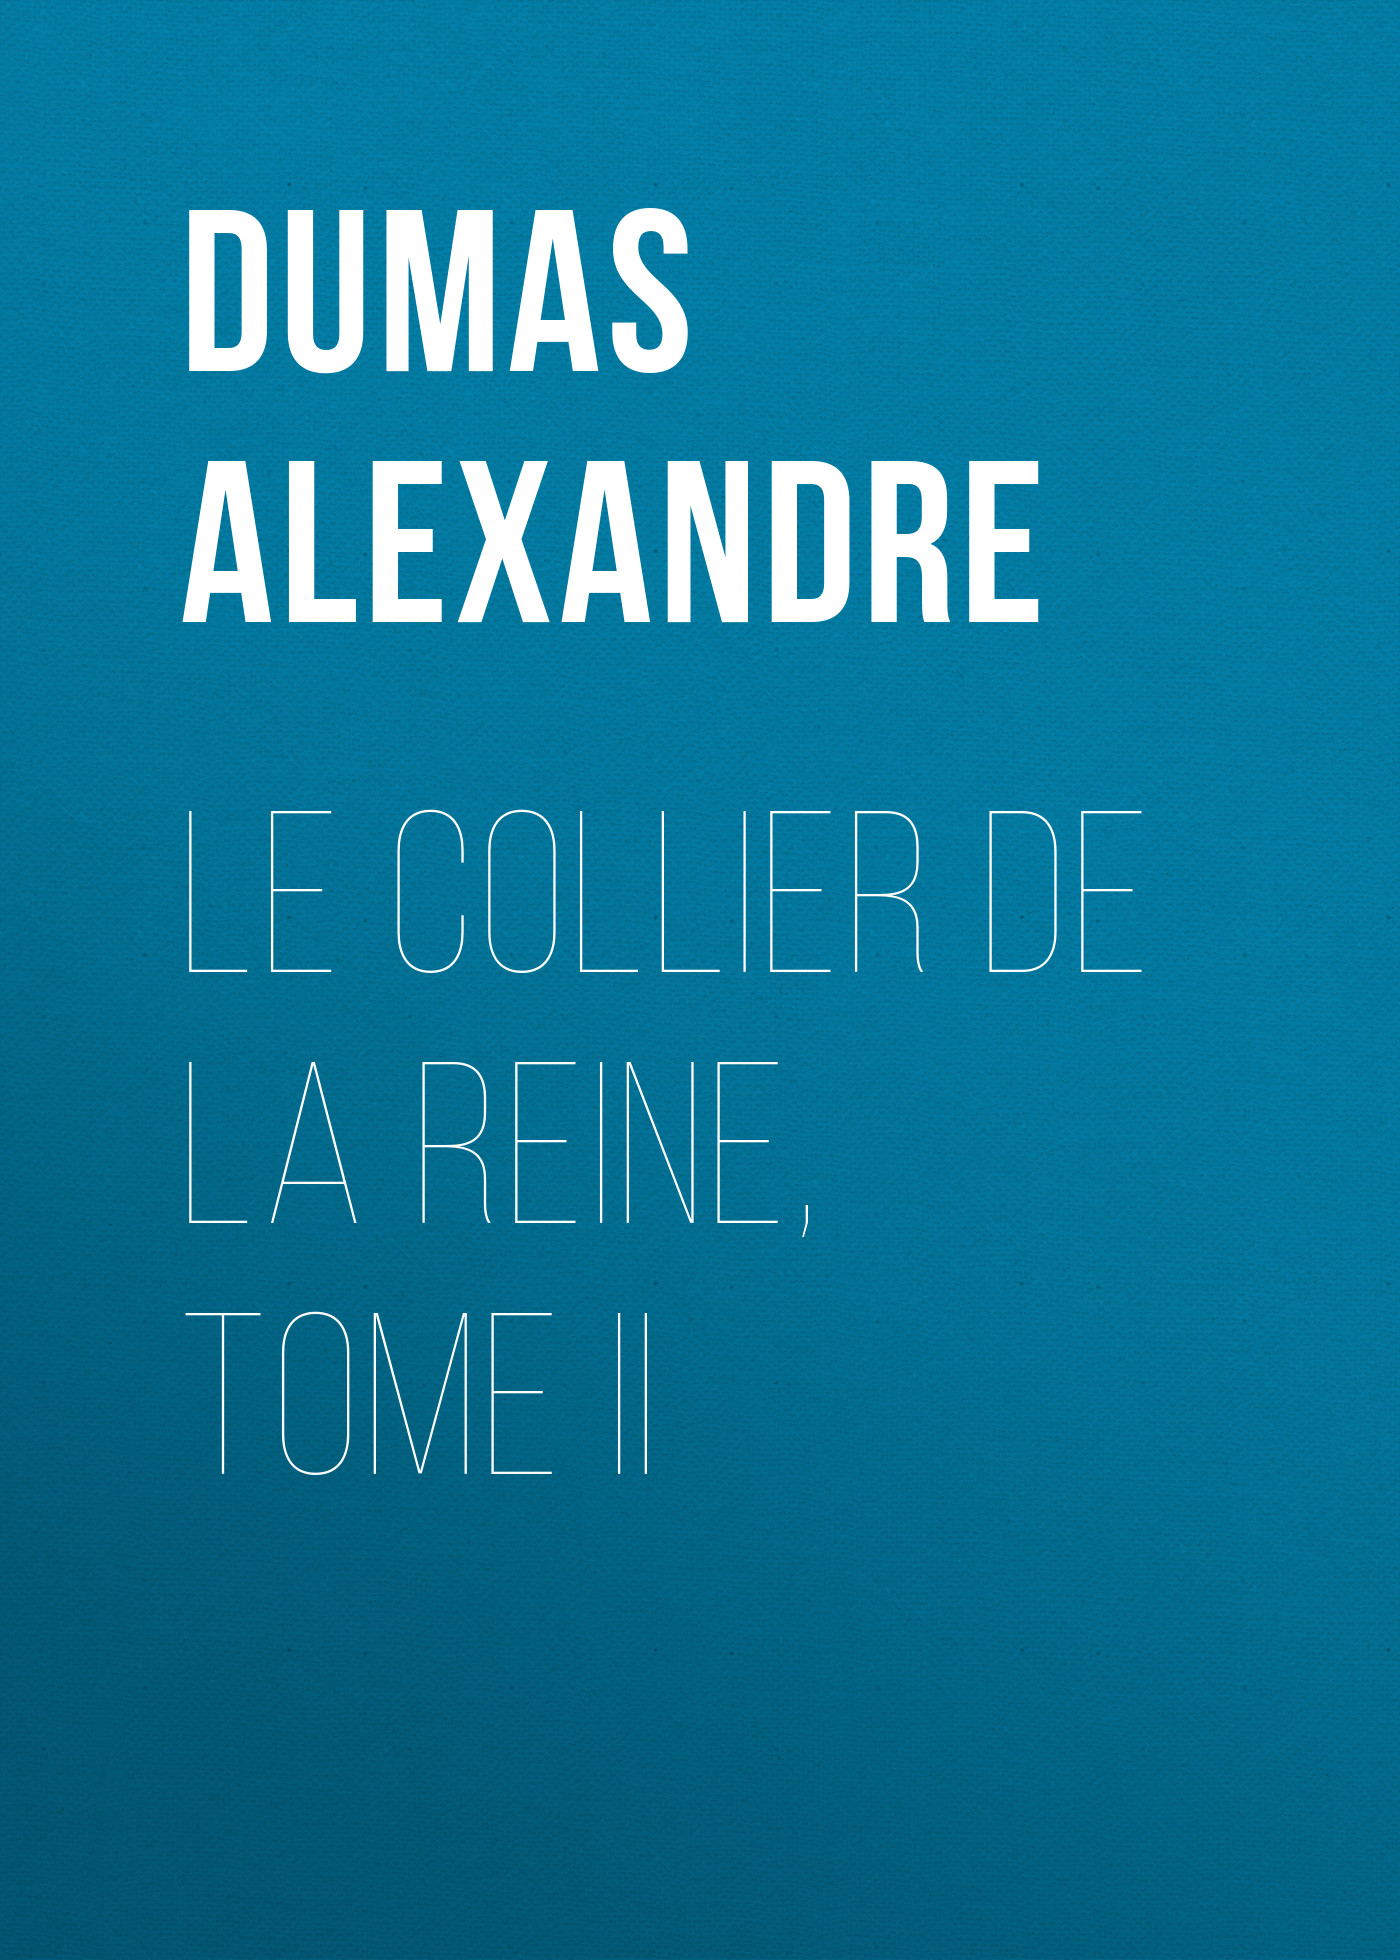 Книга Le Collier de la Reine, Tome II из серии , созданная Alexandre Dumas, может относится к жанру Литература 19 века, Зарубежная старинная литература, Зарубежная классика. Стоимость электронной книги Le Collier de la Reine, Tome II с идентификатором 25201807 составляет 0 руб.